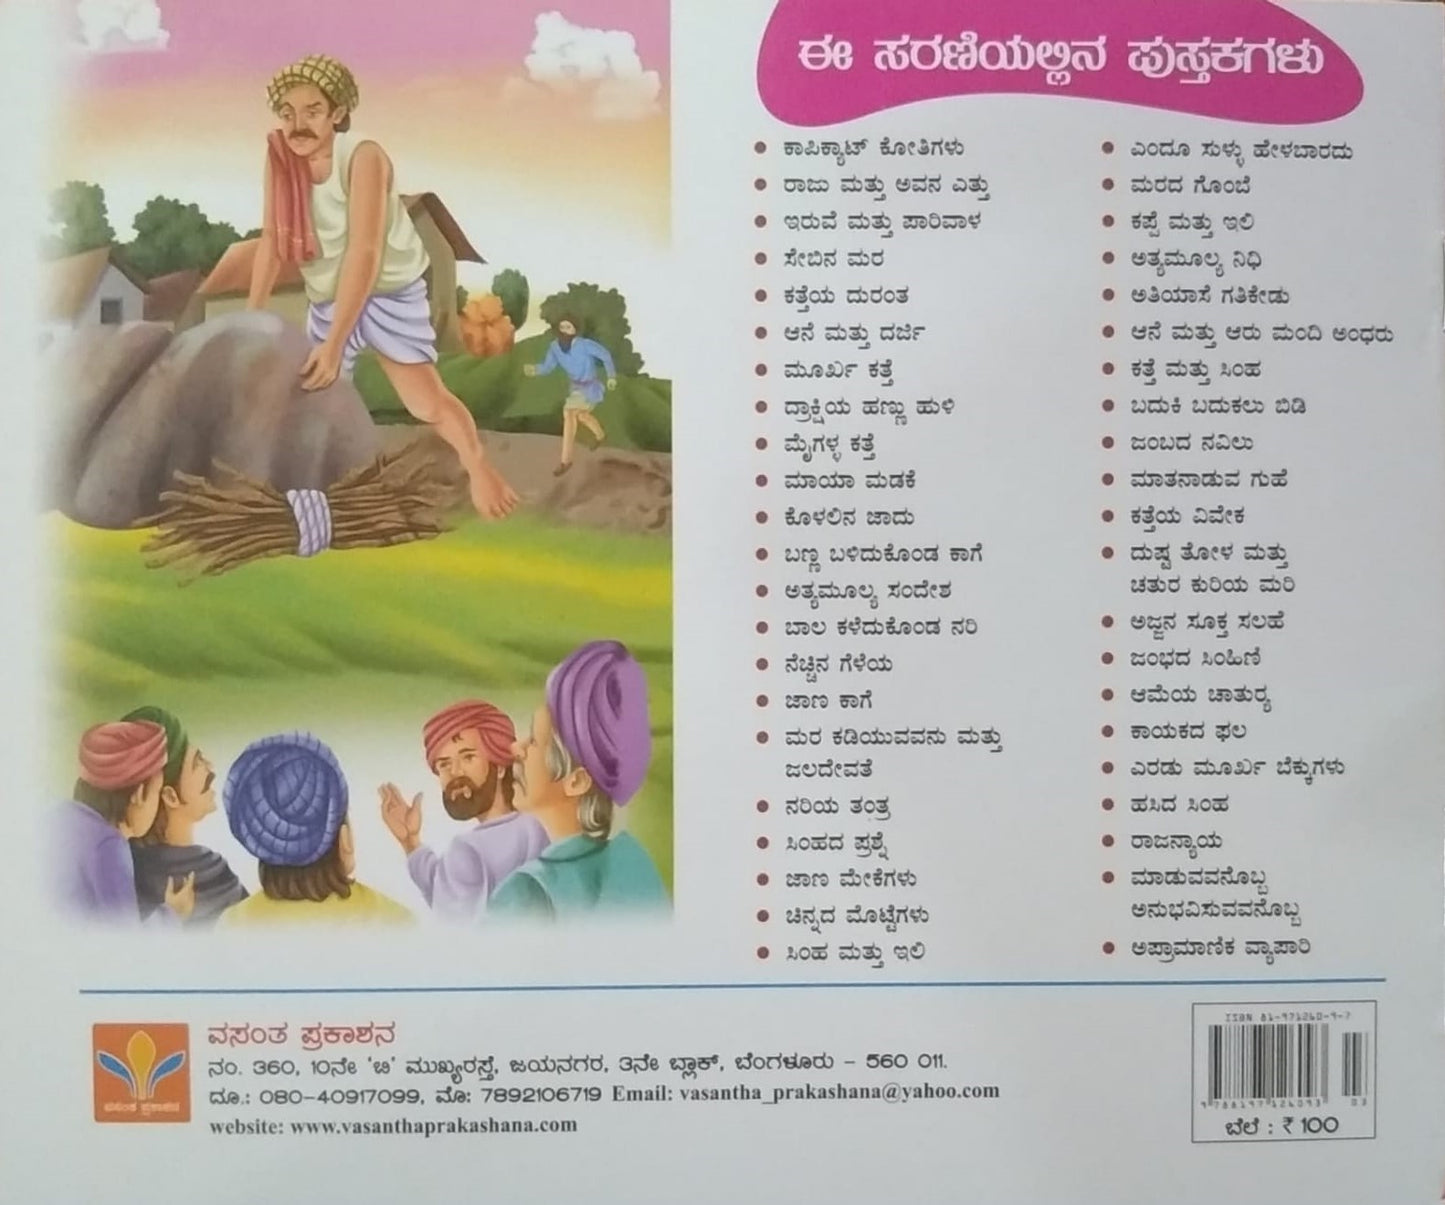 Kaayakada Phala is a chilren's stories book edited by S. Pattabhirama and Published by Vasantha Prakashana